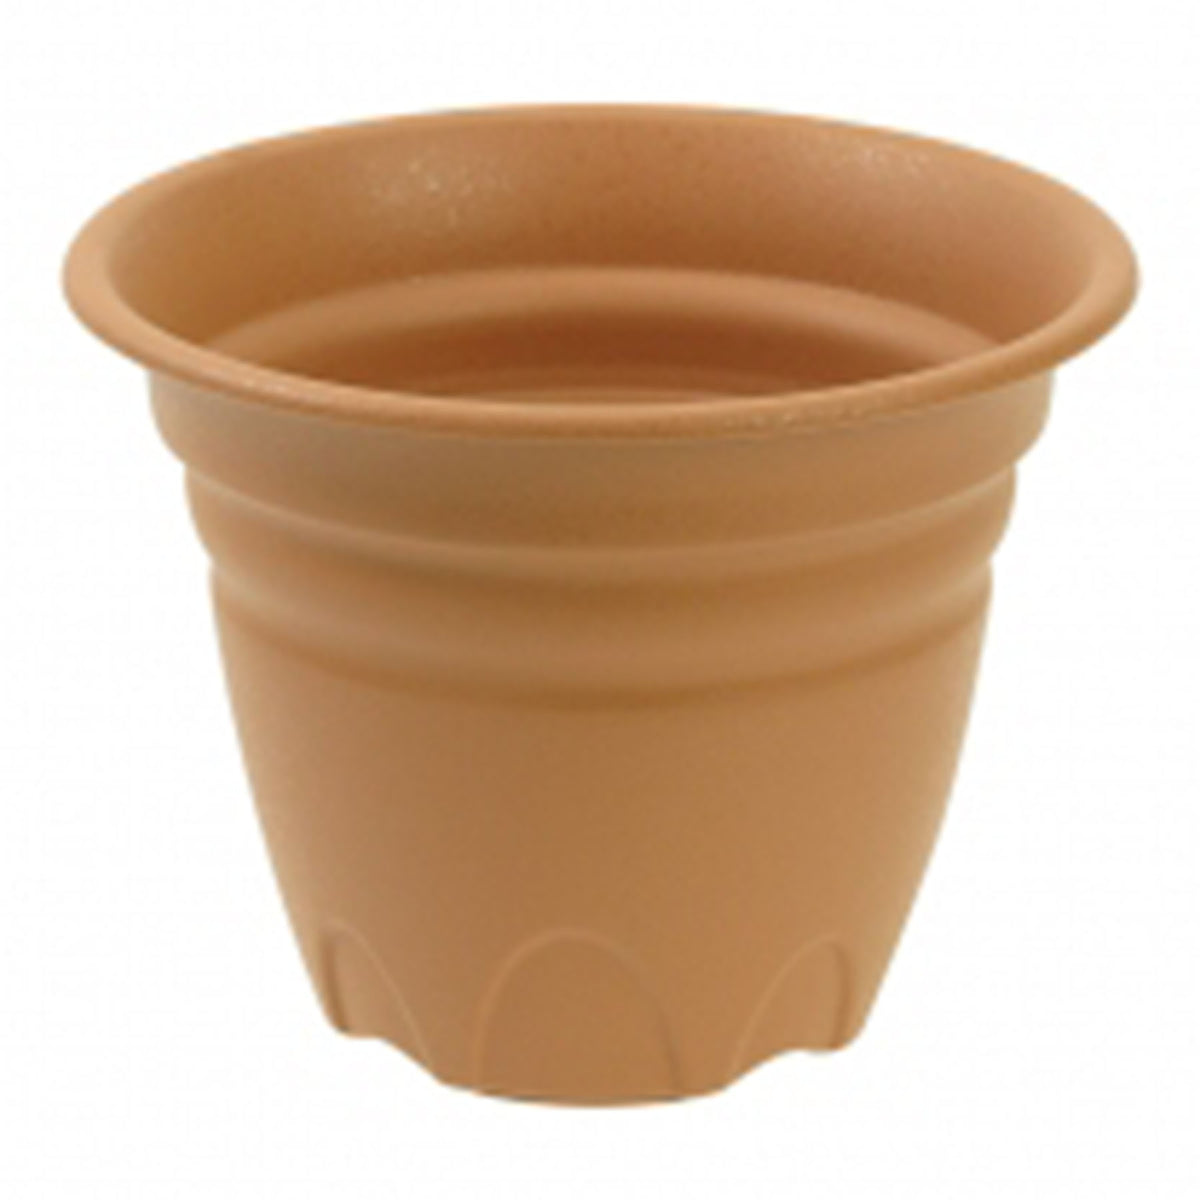 Round Tulip Pot - Brown ColorSize: 20x15.1 cm